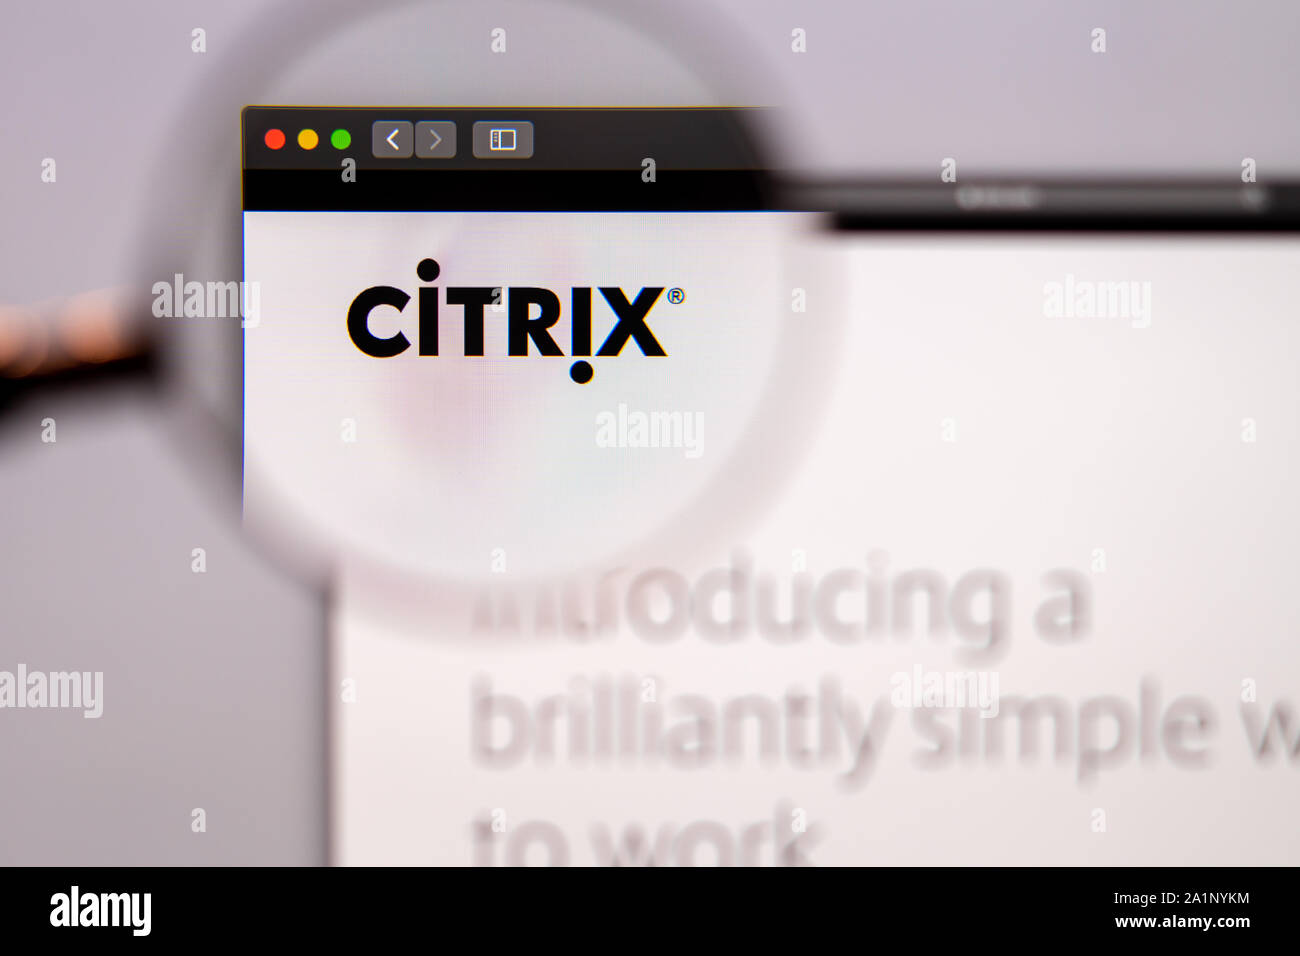 Citrix Startseite. Nahaufnahme von Citrix Logo. Kann als illustrative für Nachrichtenmedien oder Business Konzept verwendet werden. Stockfoto